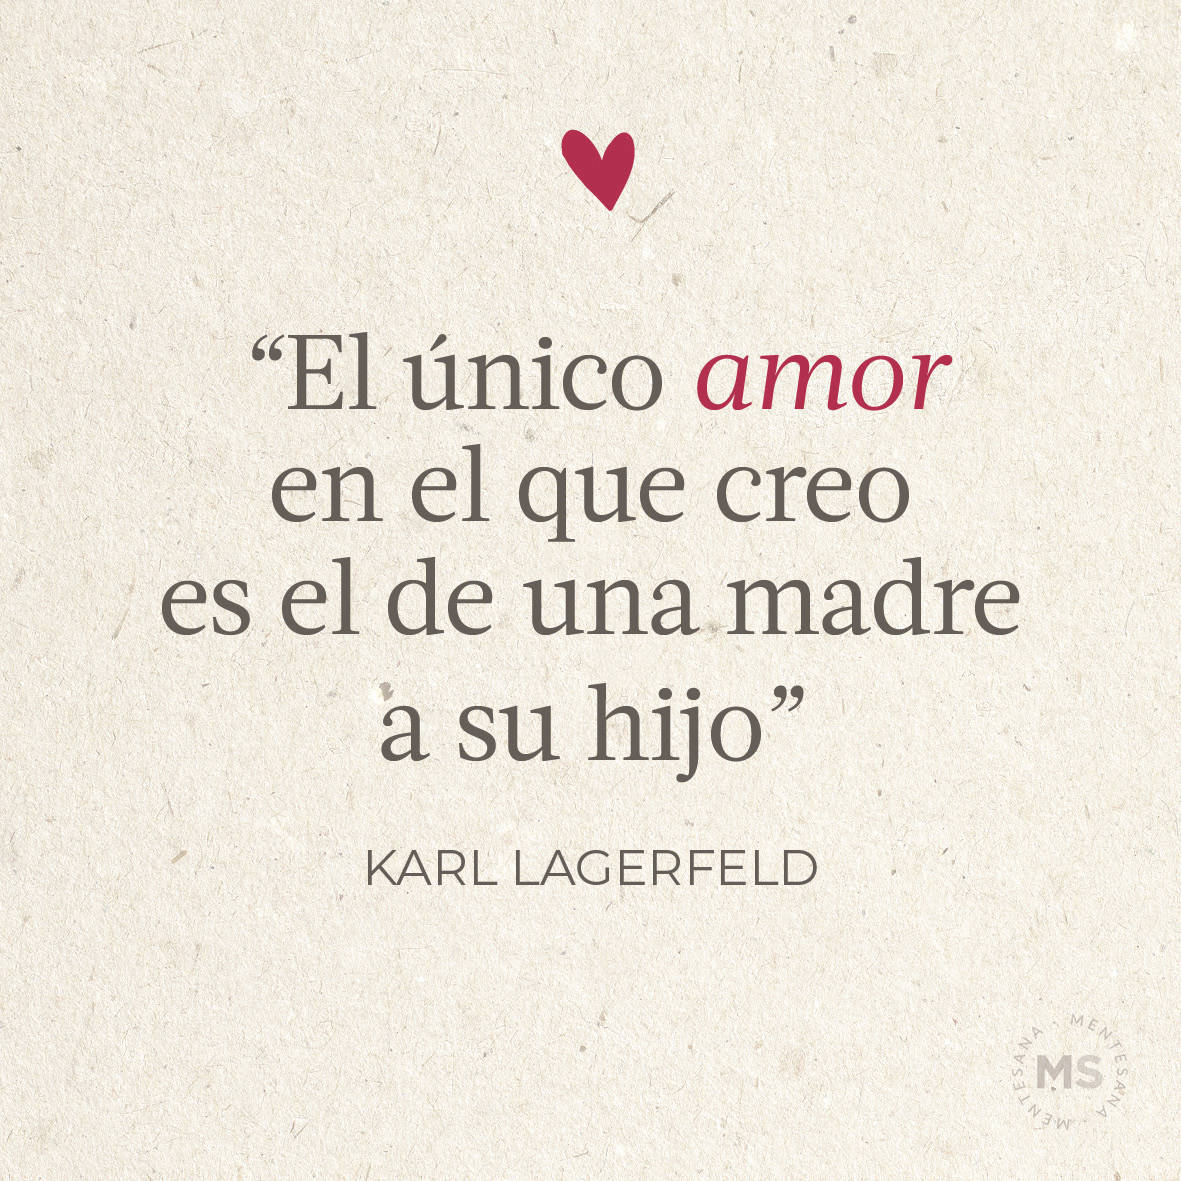 “El único amor en el que creo es el de una madre a su hijo.” Karl Lagerfeld